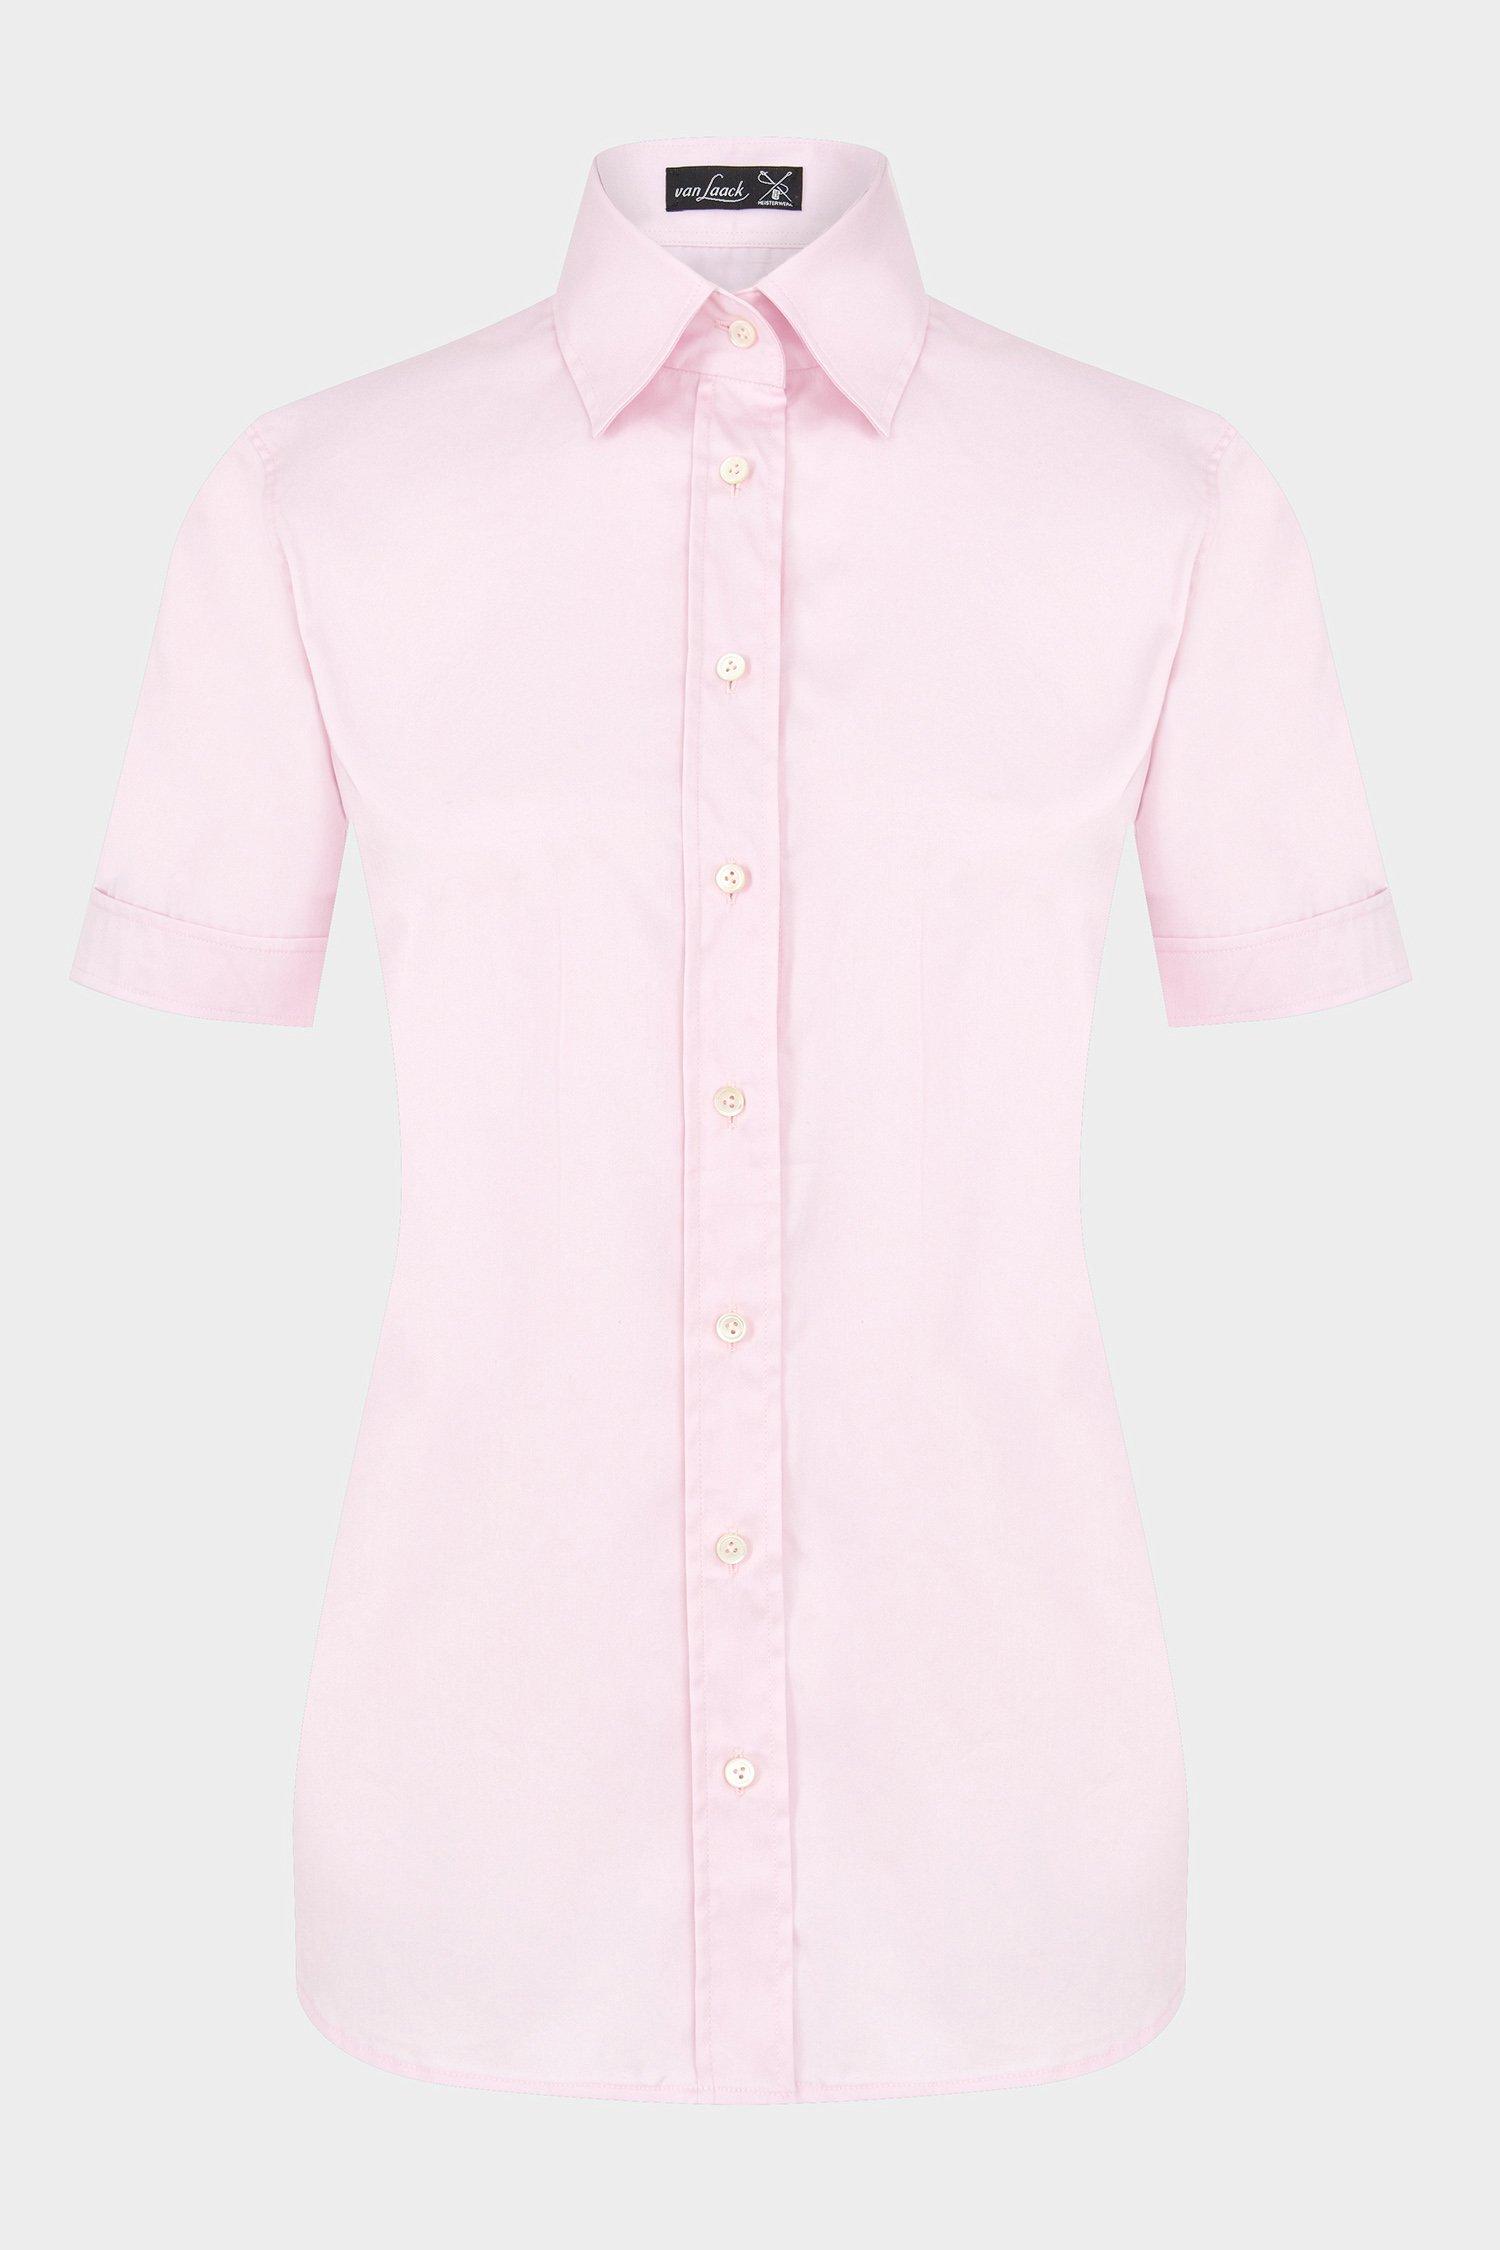 блузка LOA розовый LOA_130830_510 ,photo 1